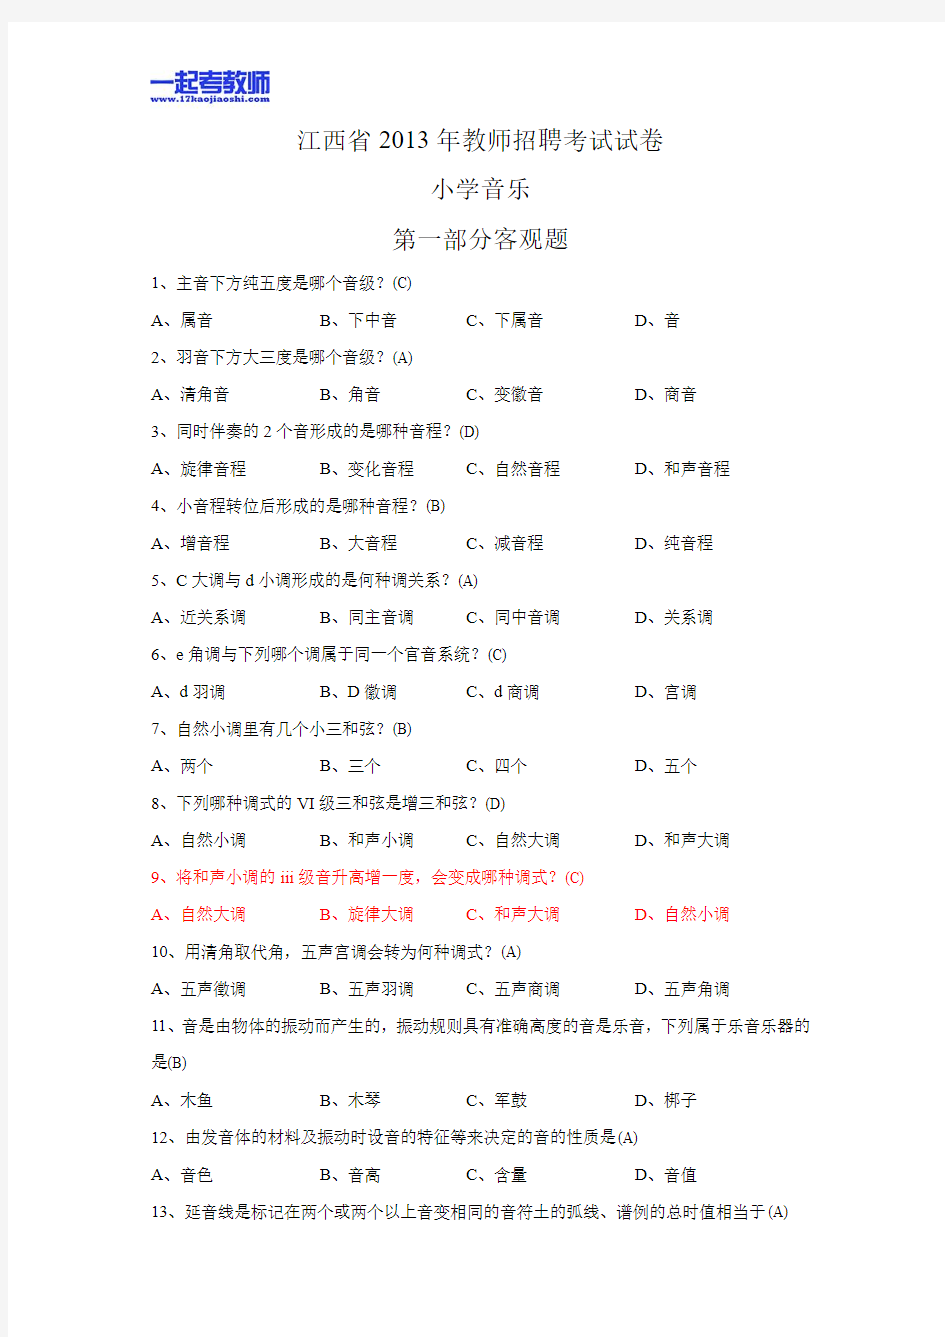 2013年江西省教师招聘考试笔试音乐小学学段真题答案解析